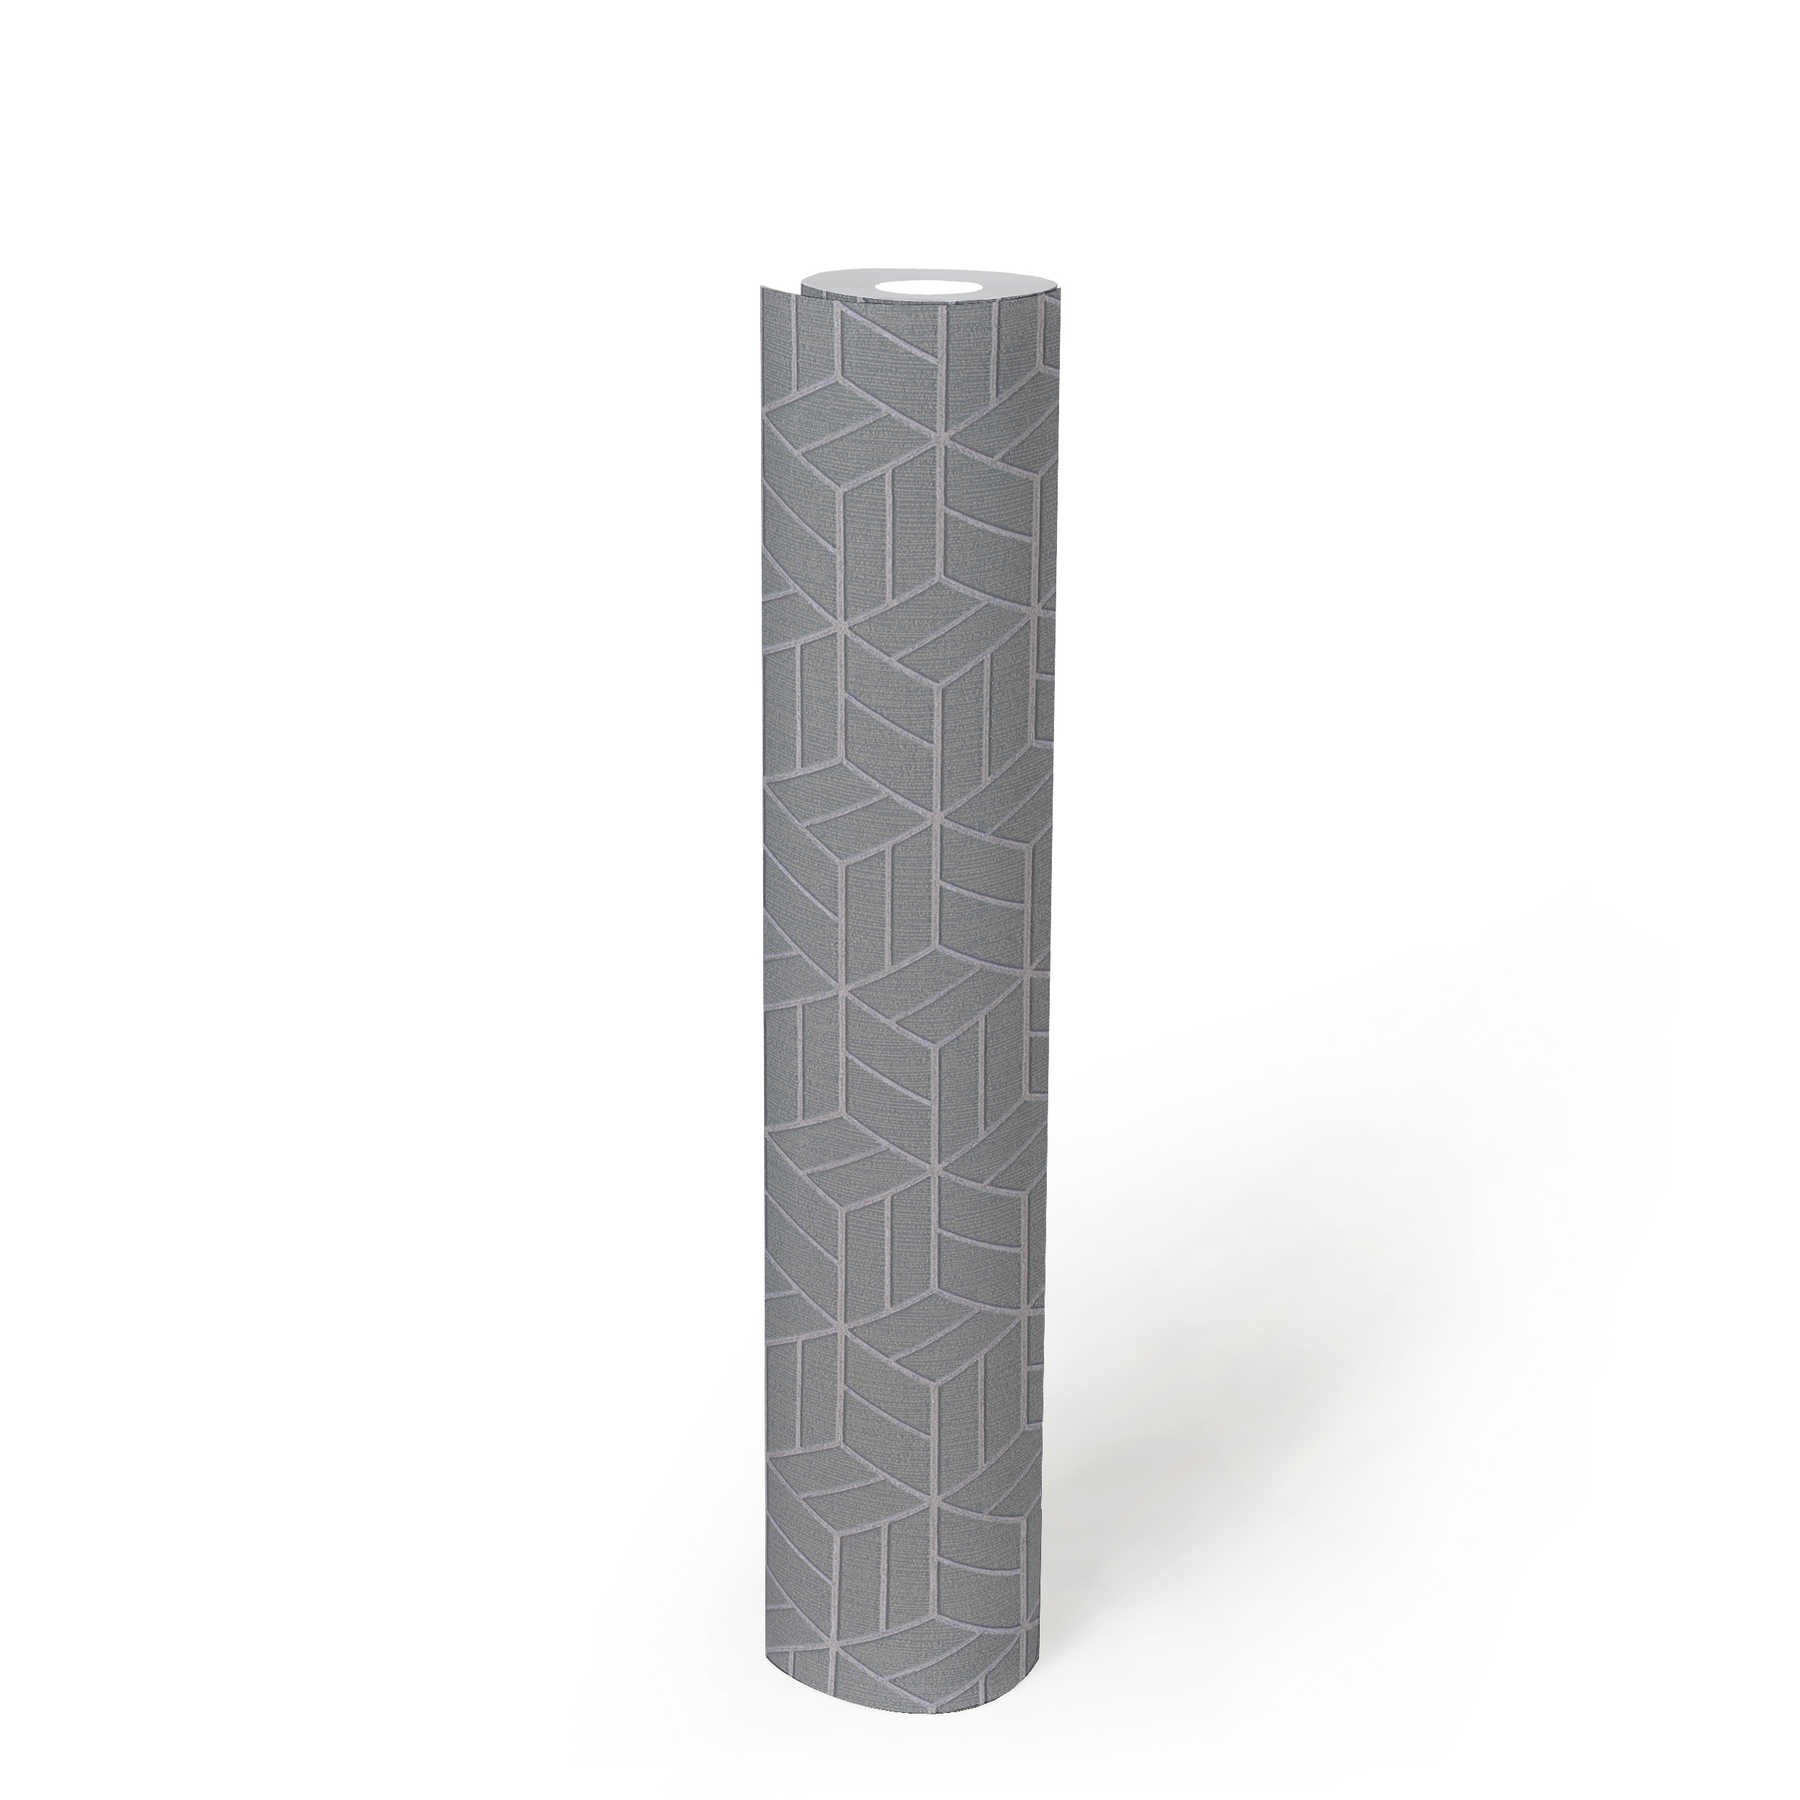             Tapete geometrisches Muster & Glitzer-Effekt – Grau, Silber
        